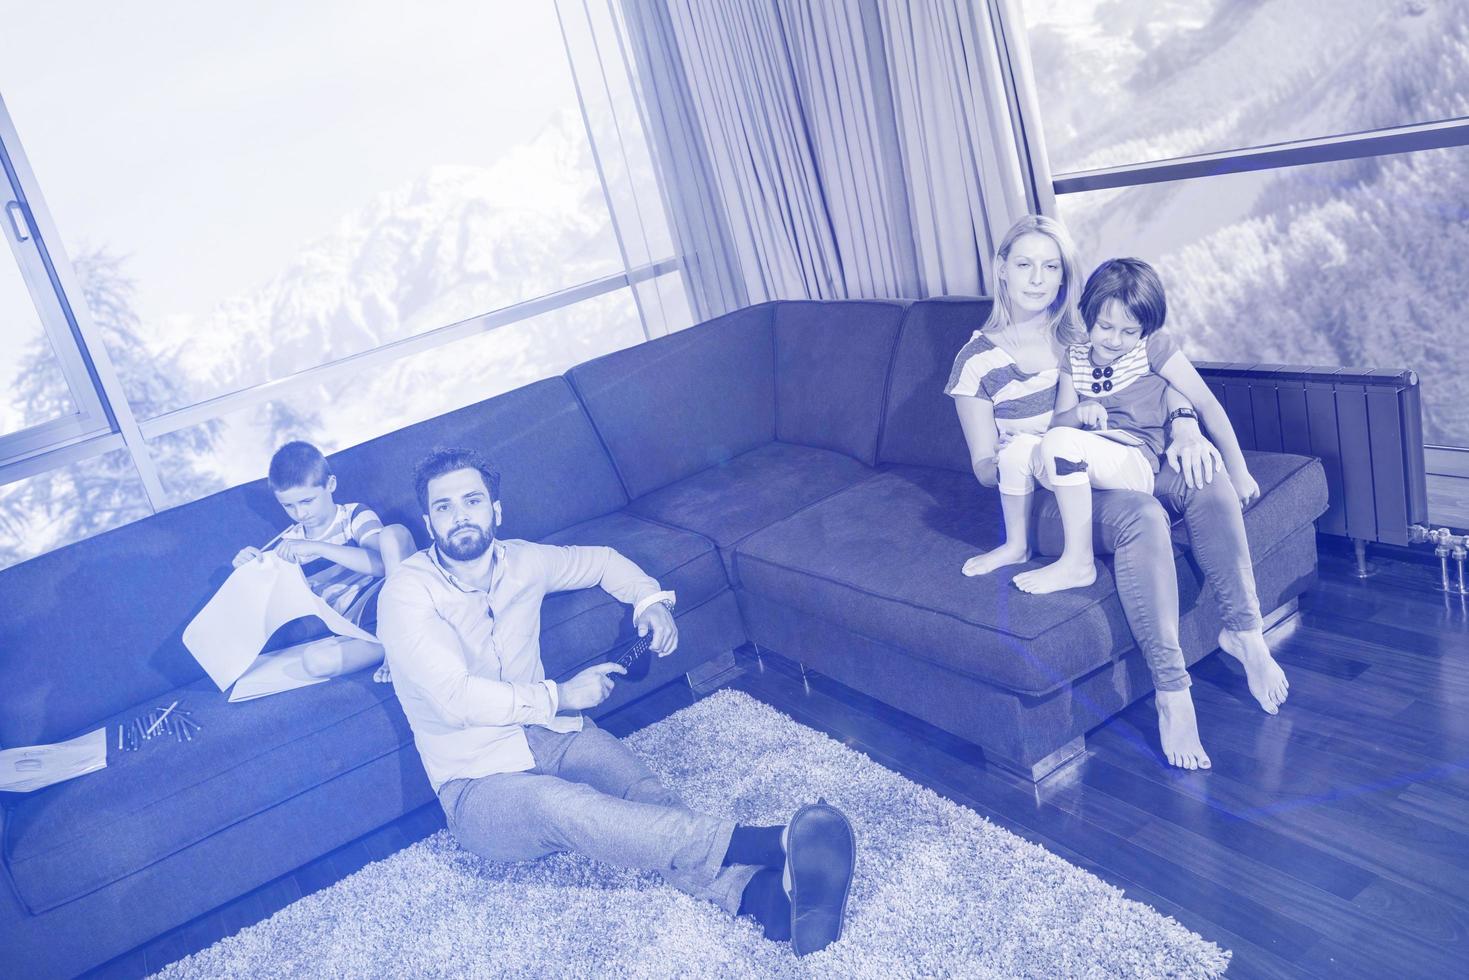 contento giovane famiglia giocando insieme su divano foto